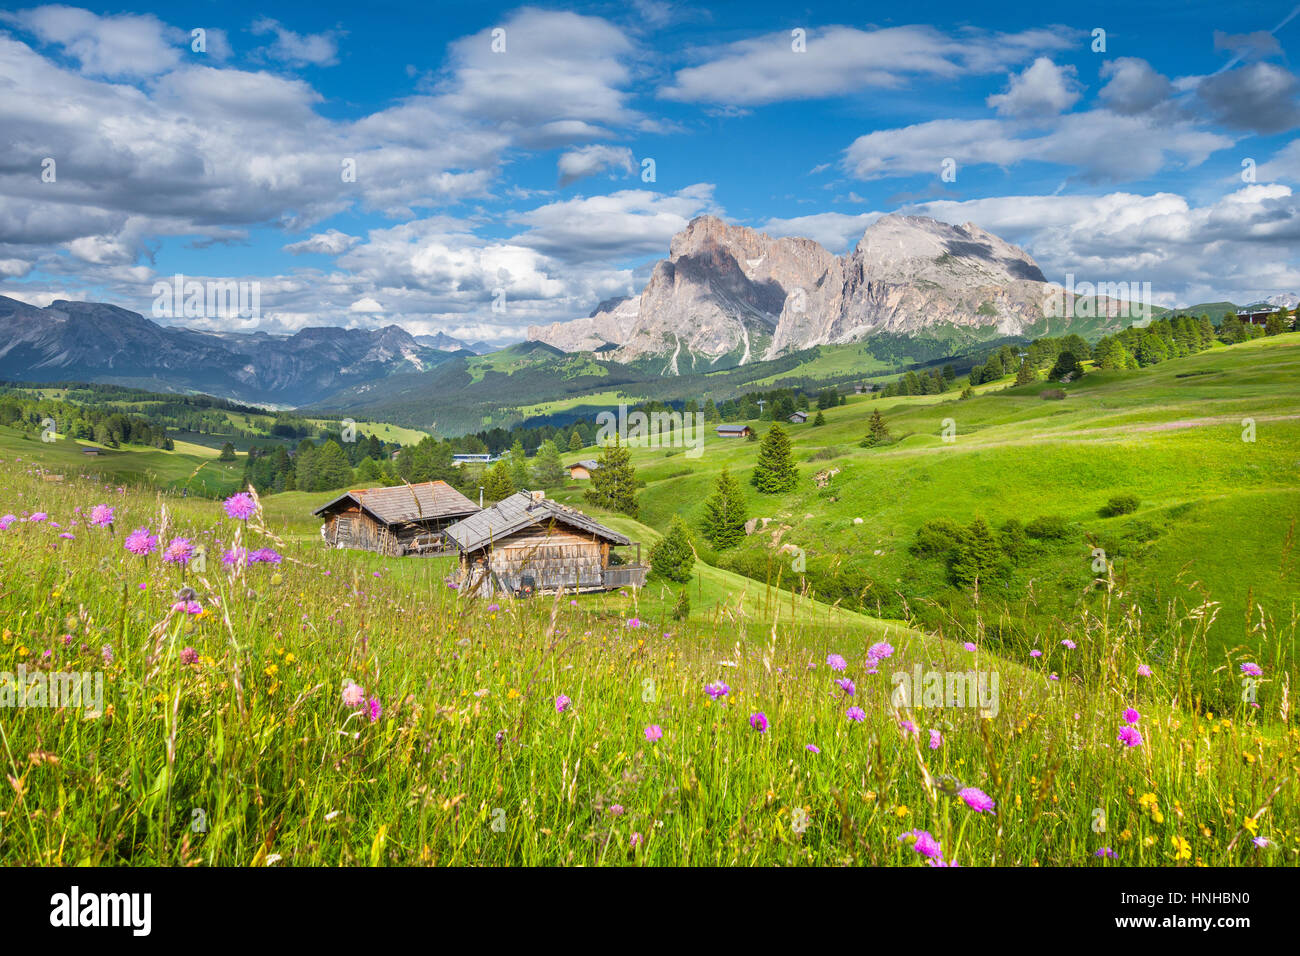 Schöne Aussicht auf die idyllische Bergkulisse der Alpen mit traditionellen alten Chalets und frischen grünen Wiesen an einem sonnigen Tag, Alpe di Siusi, Italien Stockfoto